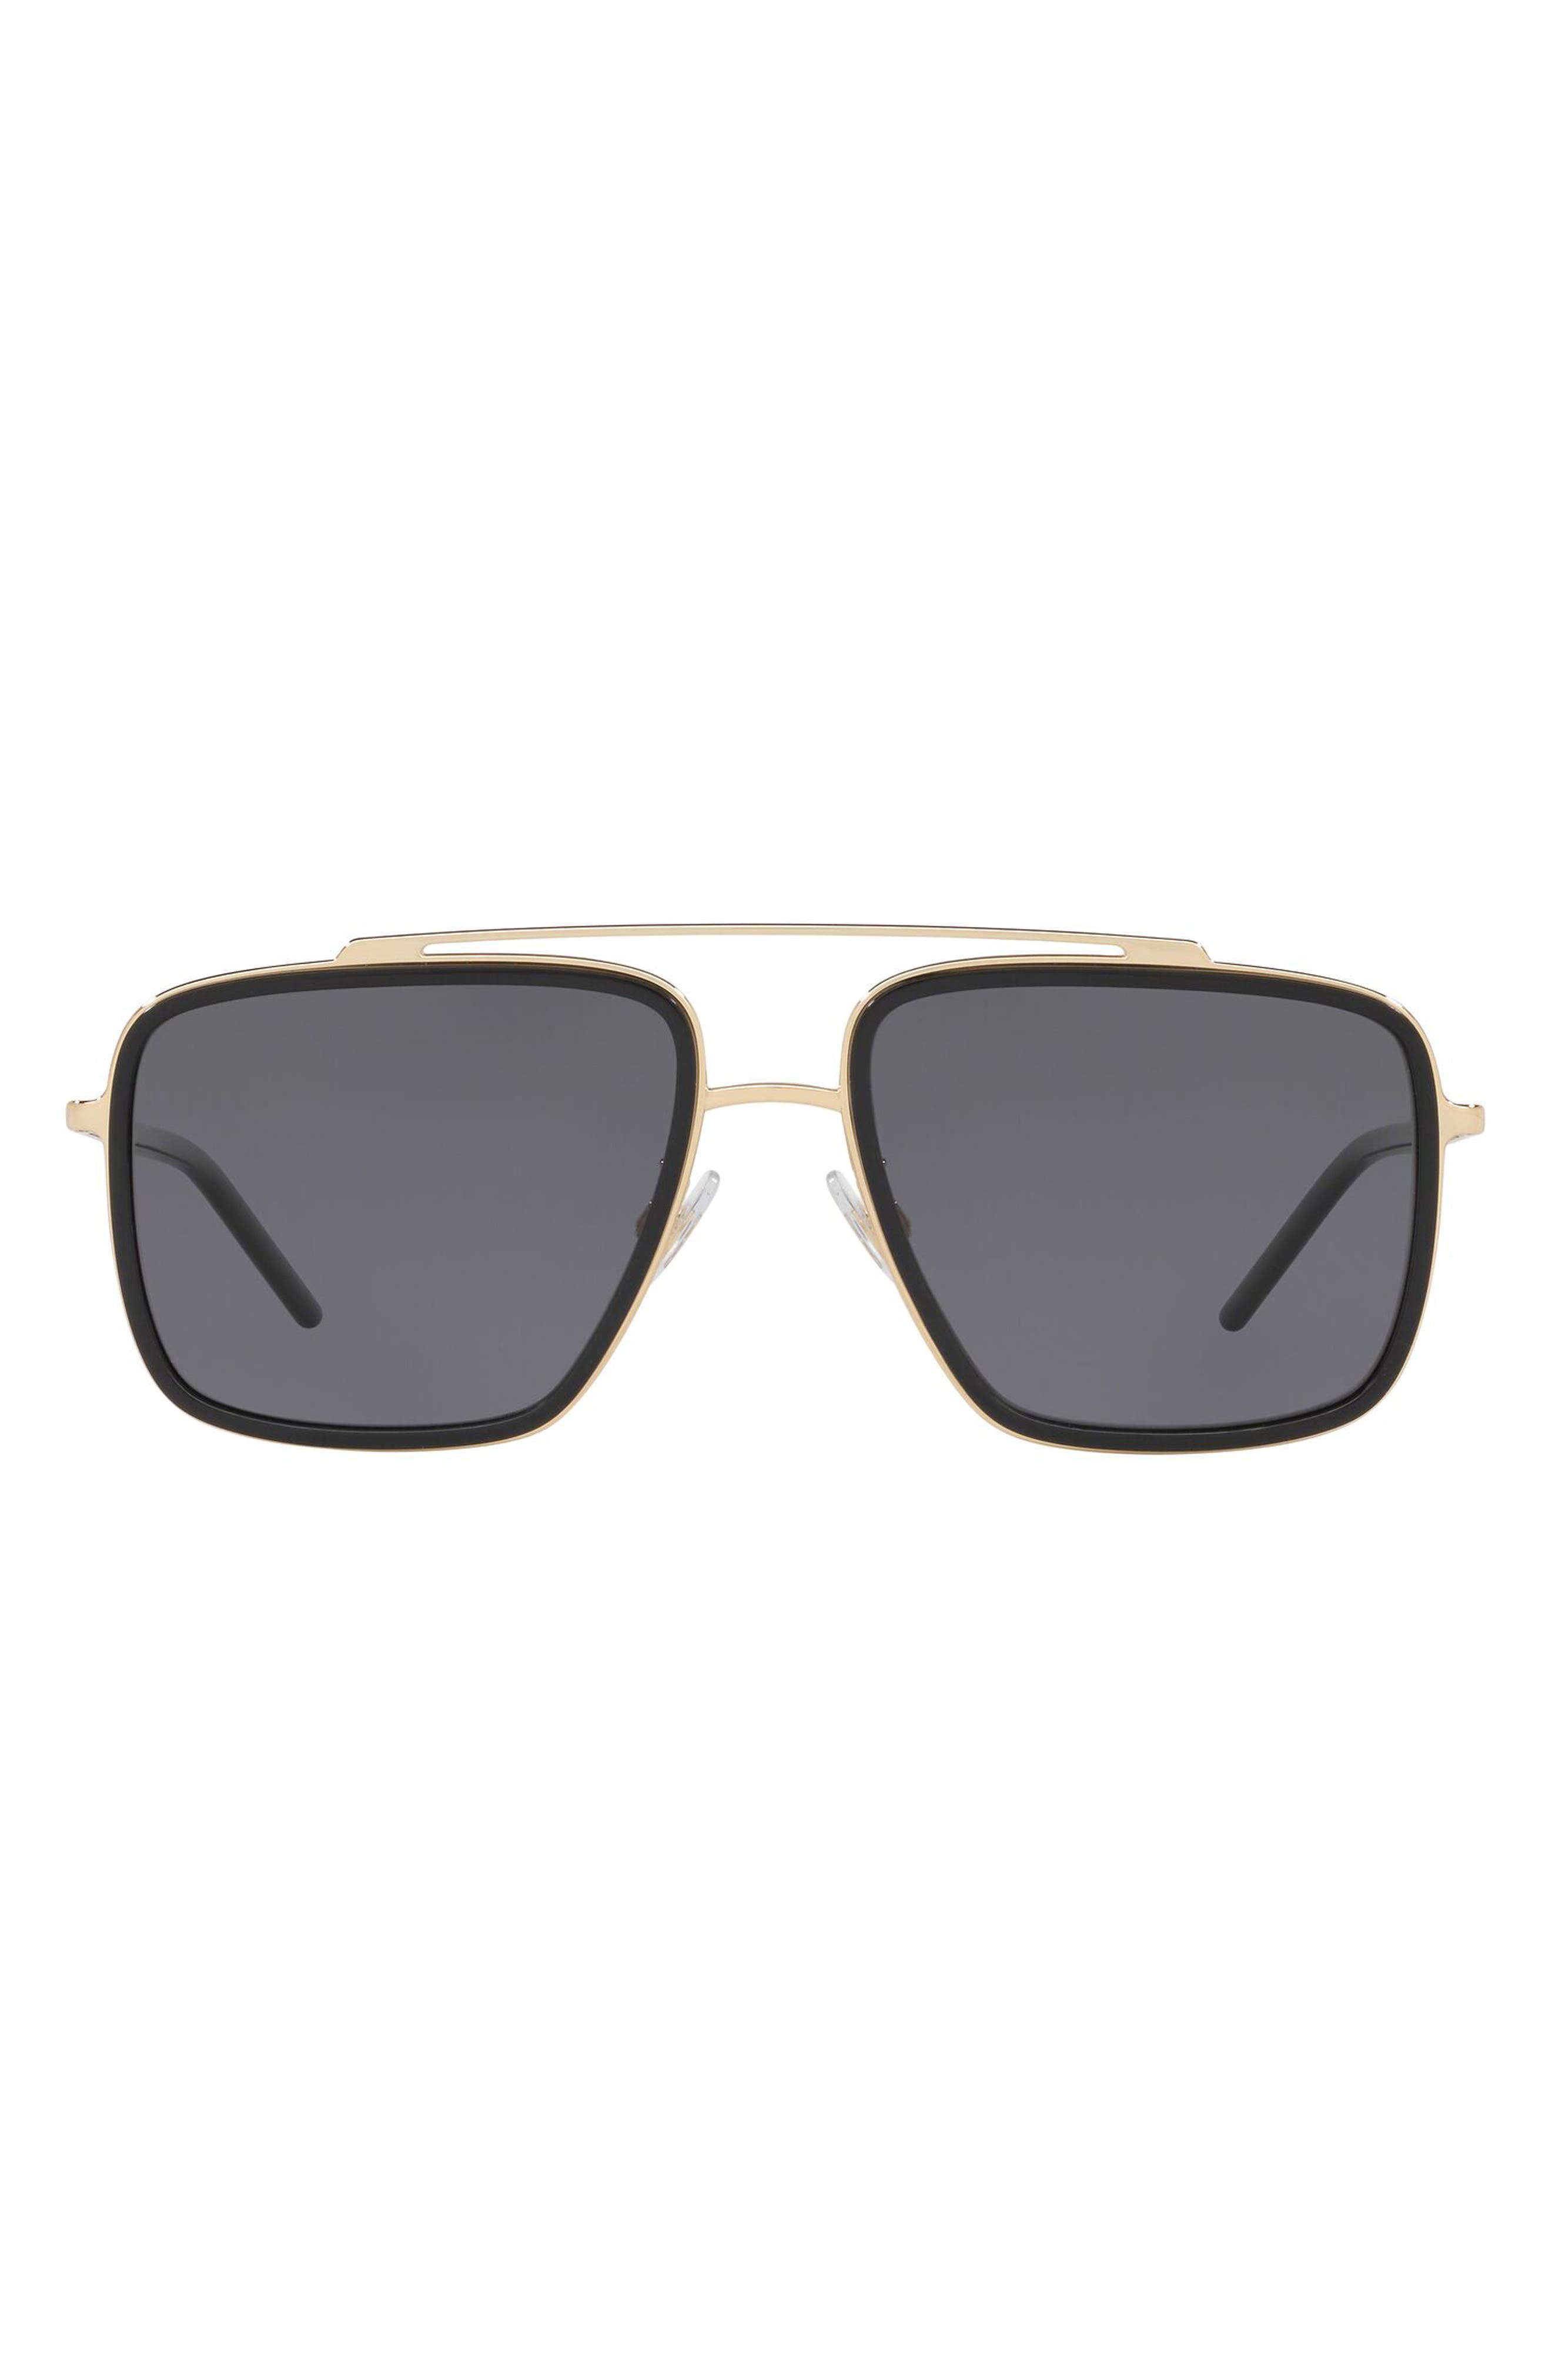 Dolce & Gabbana 57mm Polarized Navigator Sunglasses in Gold/Black/Grey at Nordstrom